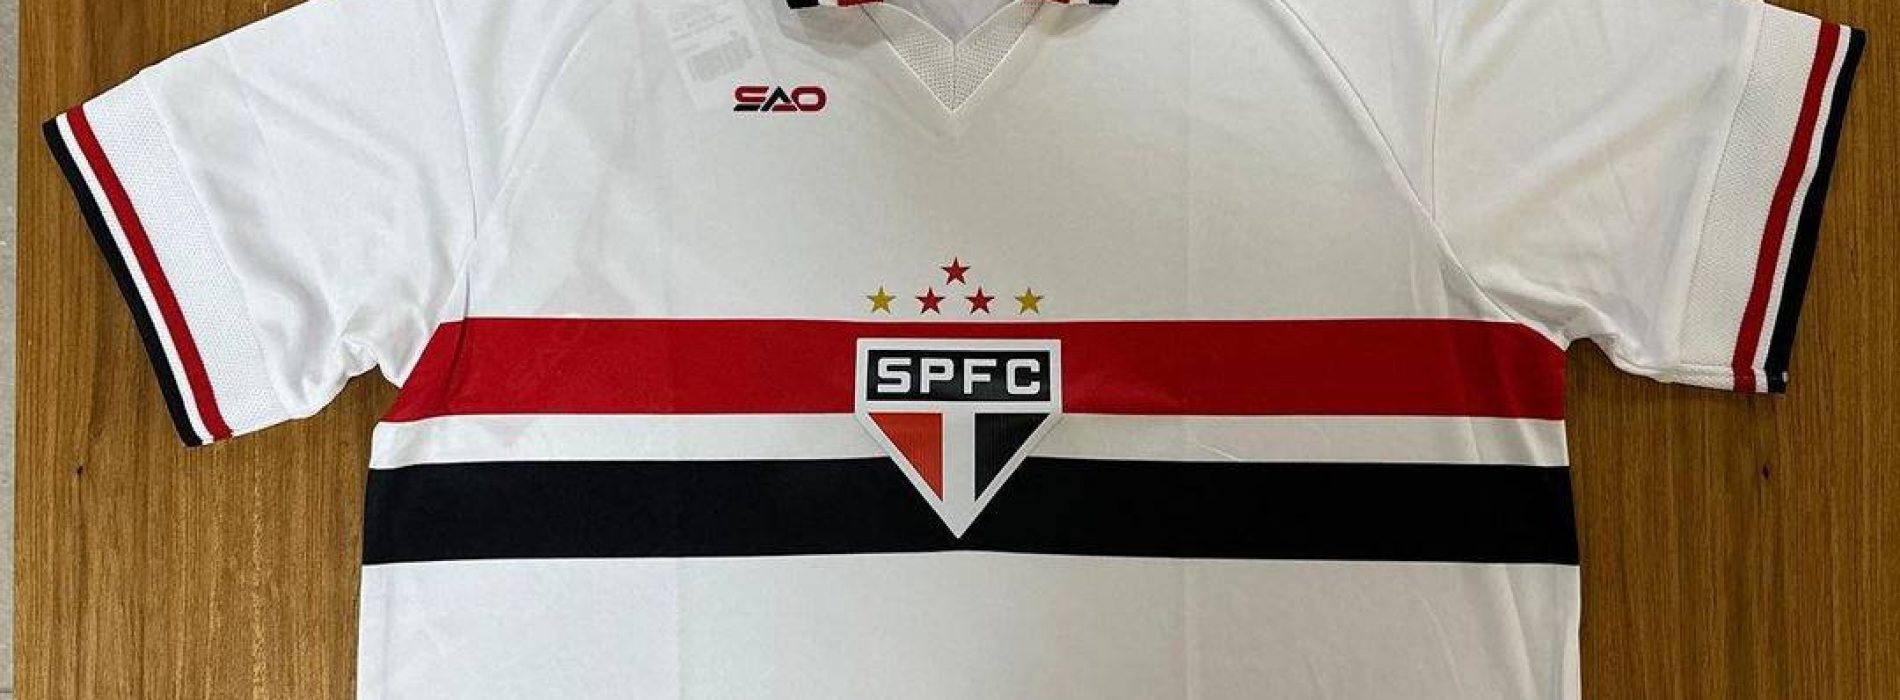 Presidente do São Paulo explica Marca Própria para uniformes: “Golaço do nosso marketing”